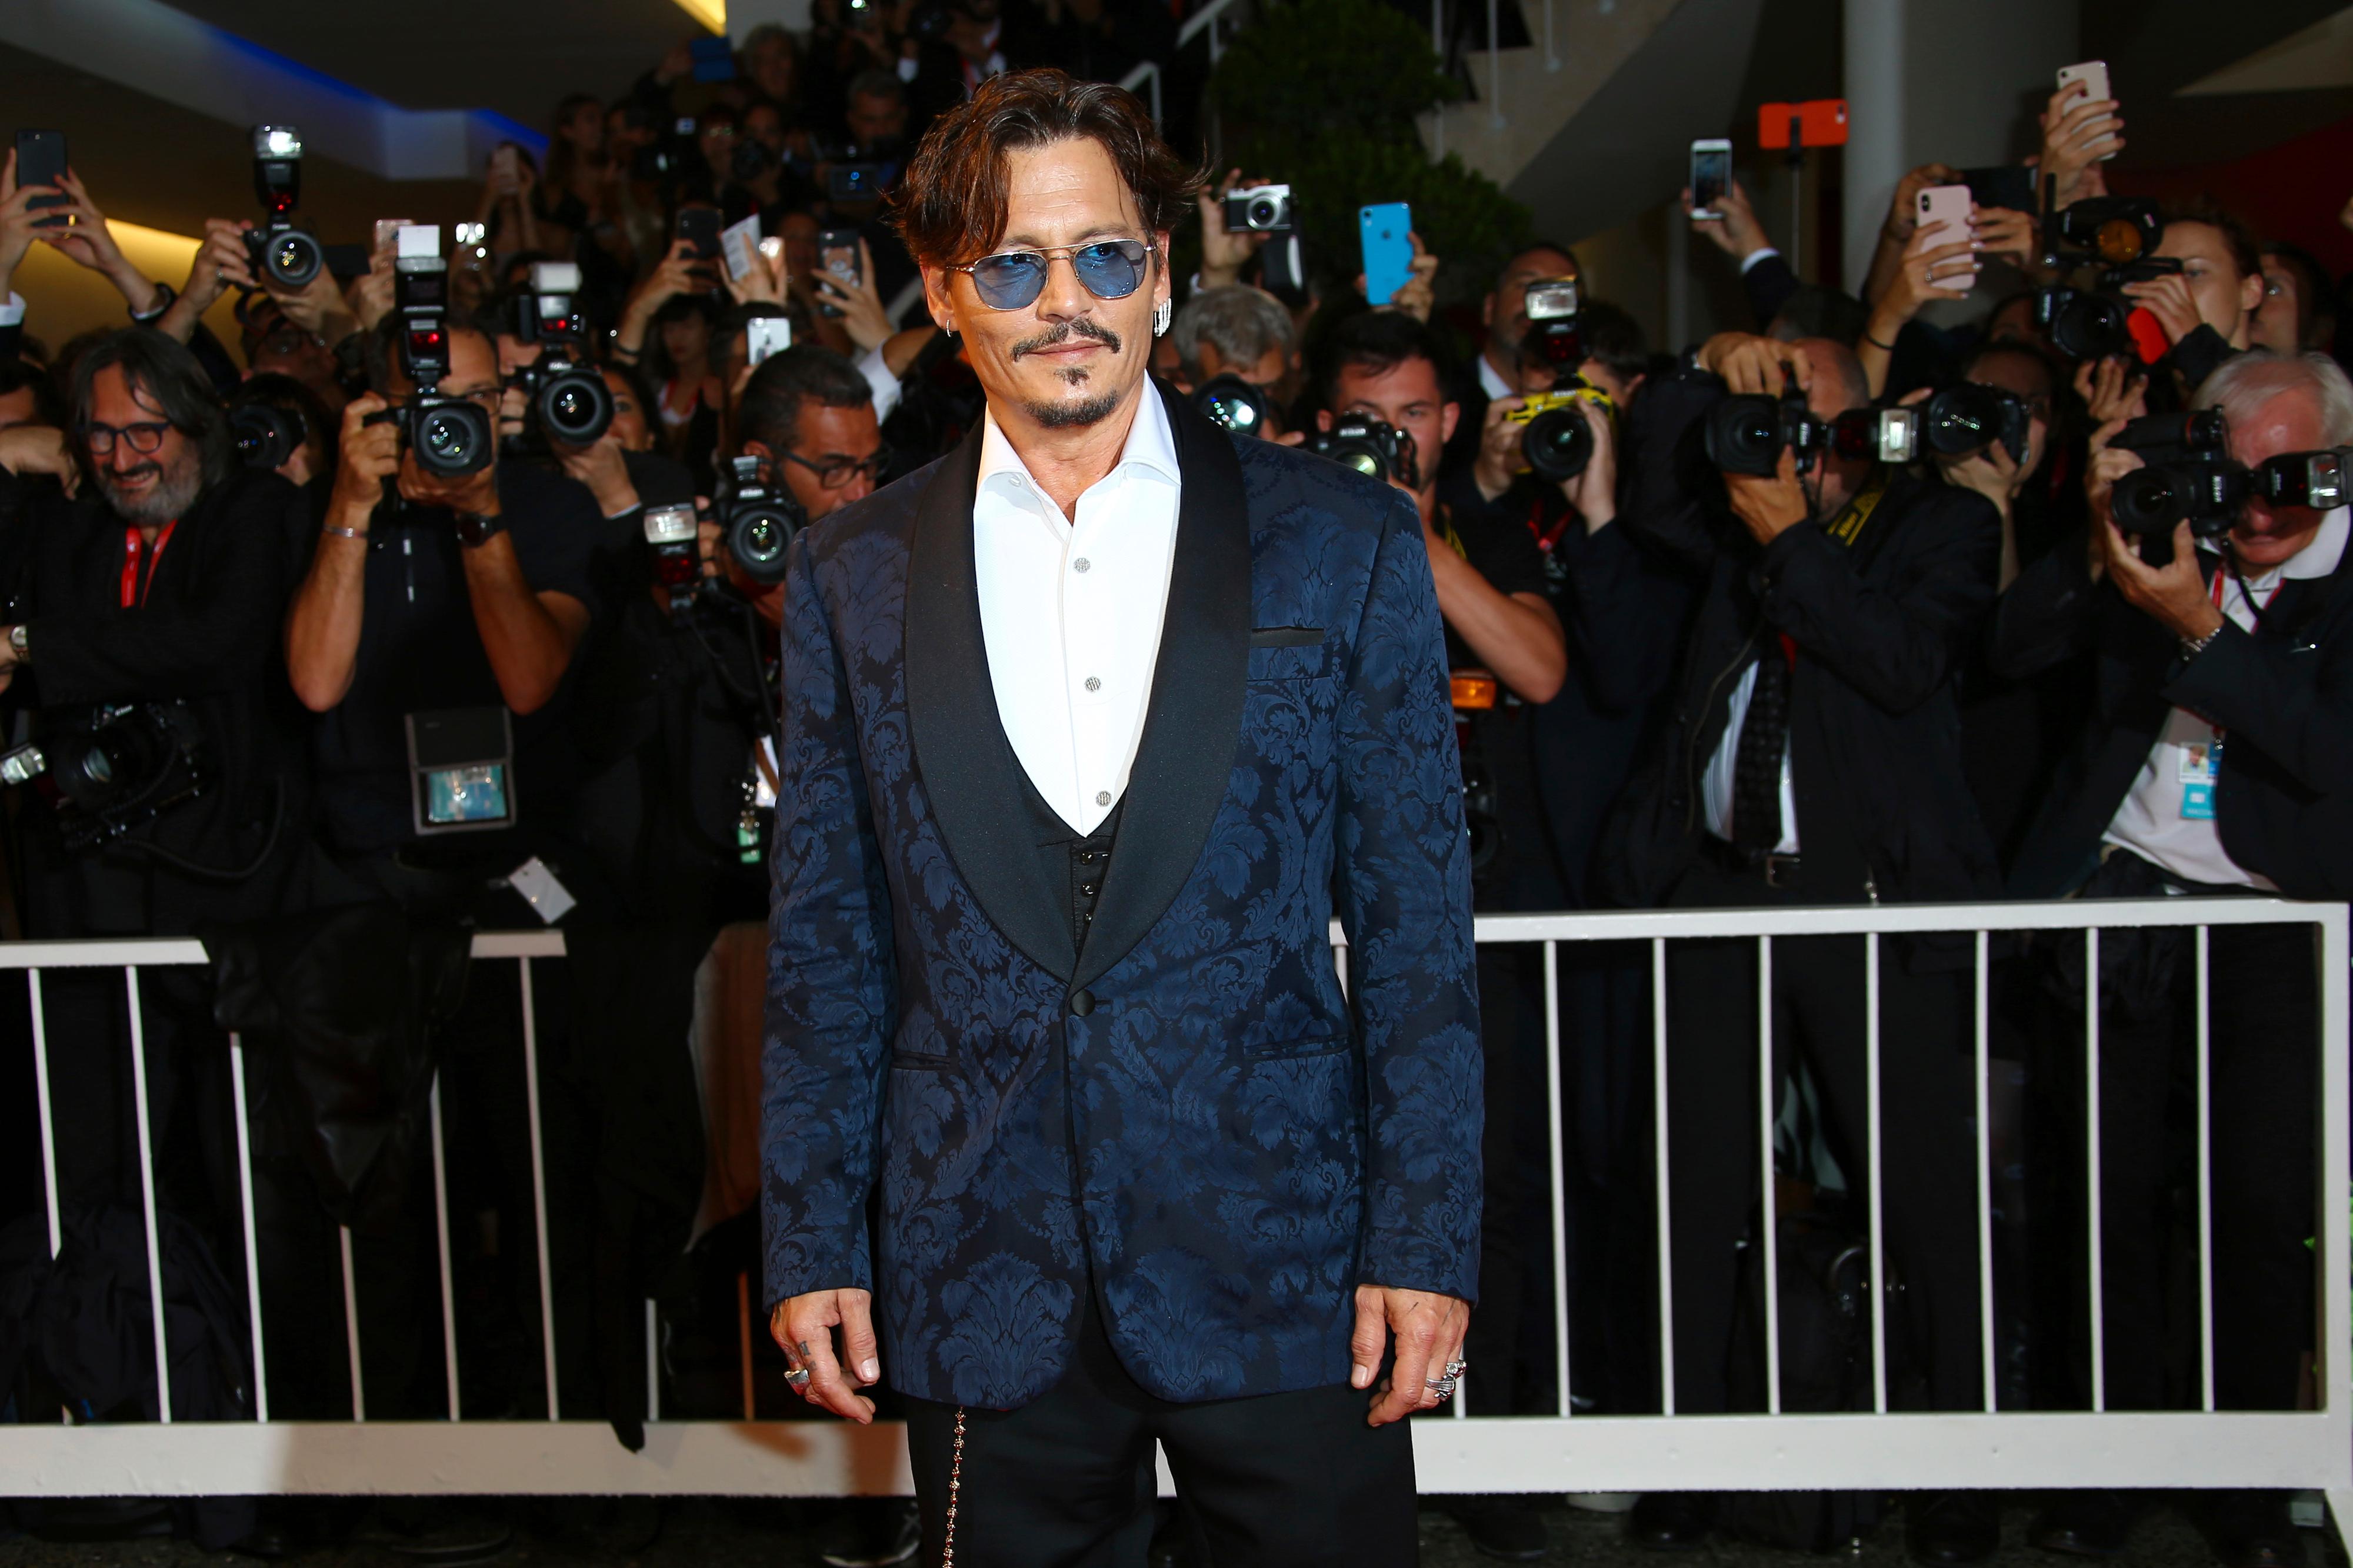 PREMIEREKLAR: Fargen i den mønstrete jakken ble plukket opp i skuespillerens solbriller.